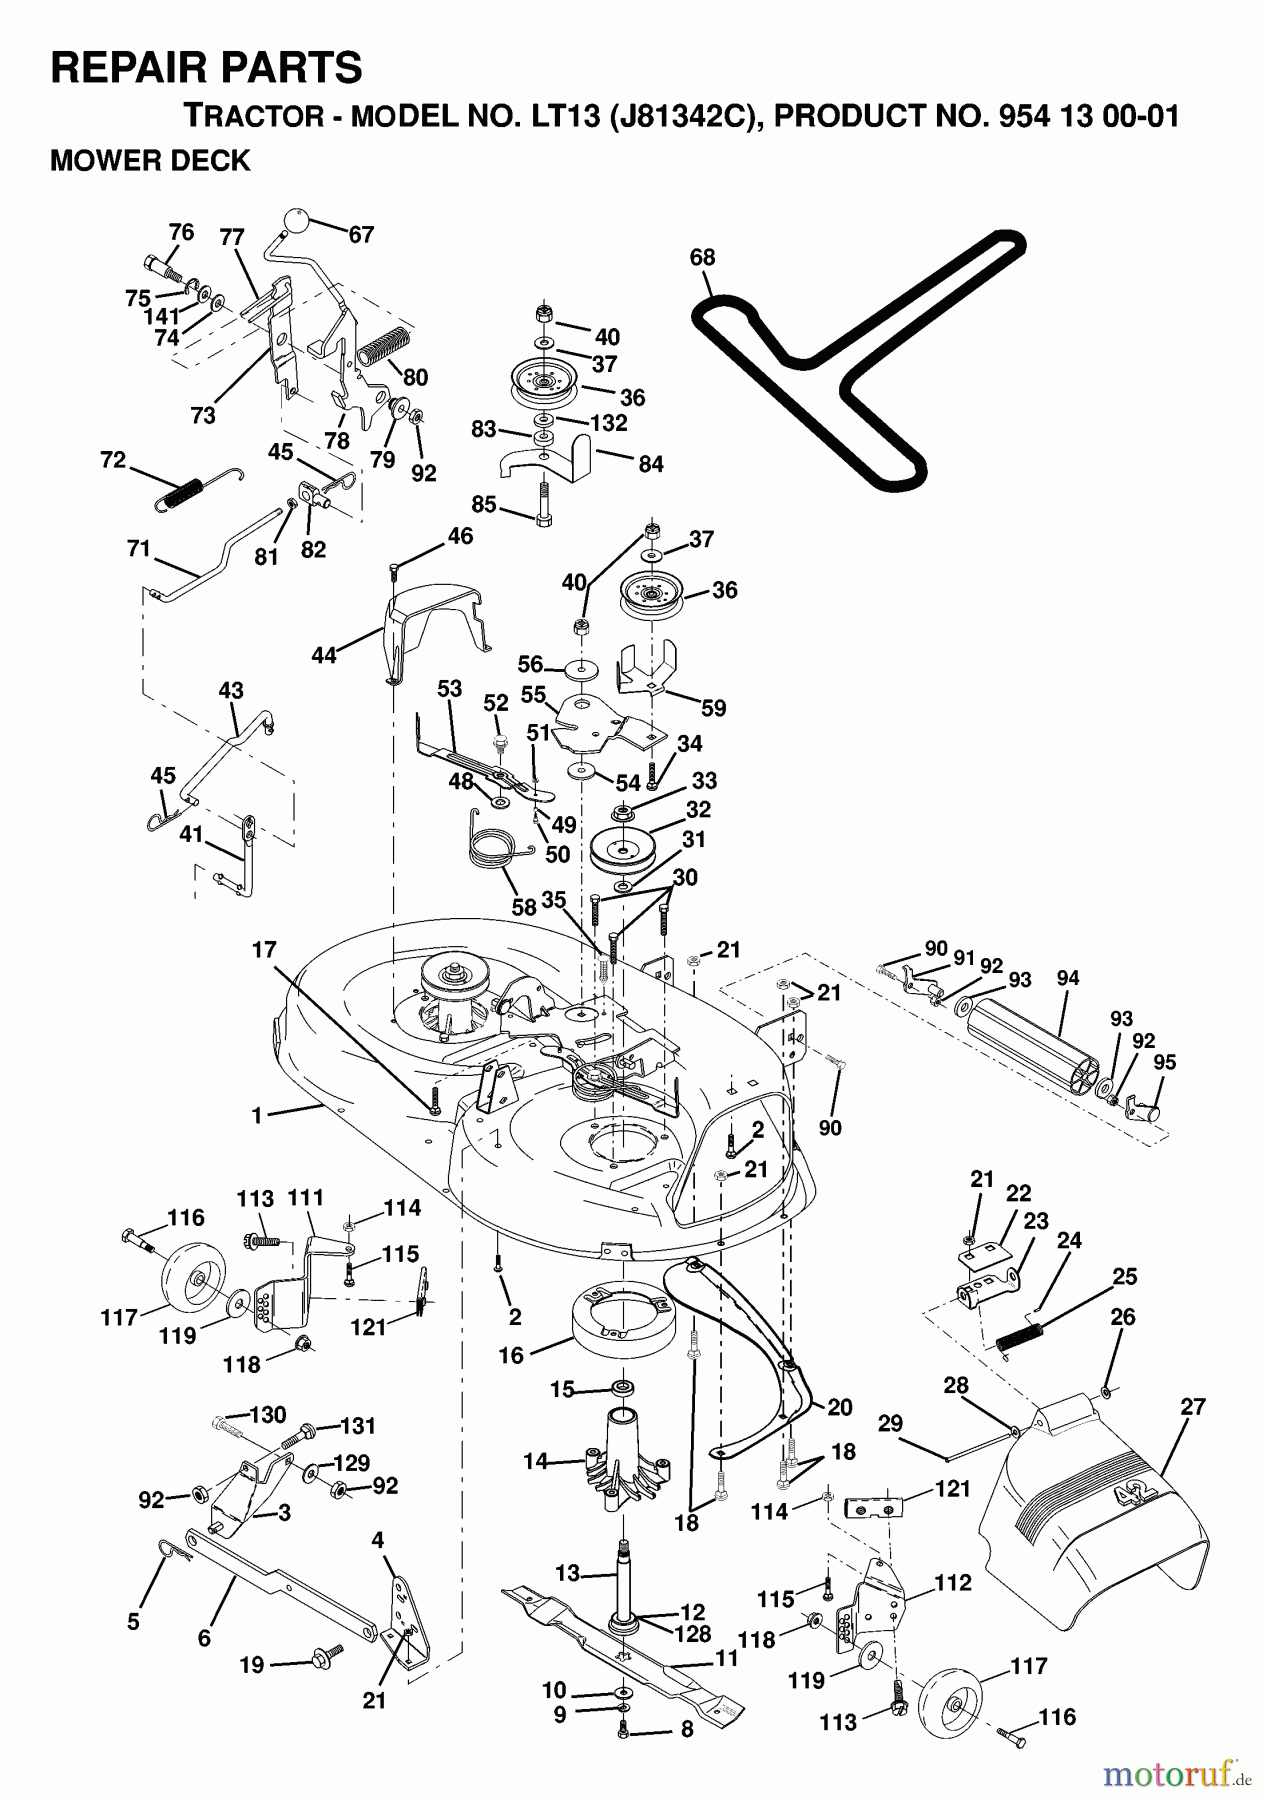  Jonsered Rasen  und Garten Traktoren LT13 (J81342C, 954130001) - Jonsered Lawn & Garden Tractor (1998-12) MOWER DECK / CUTTING DECK